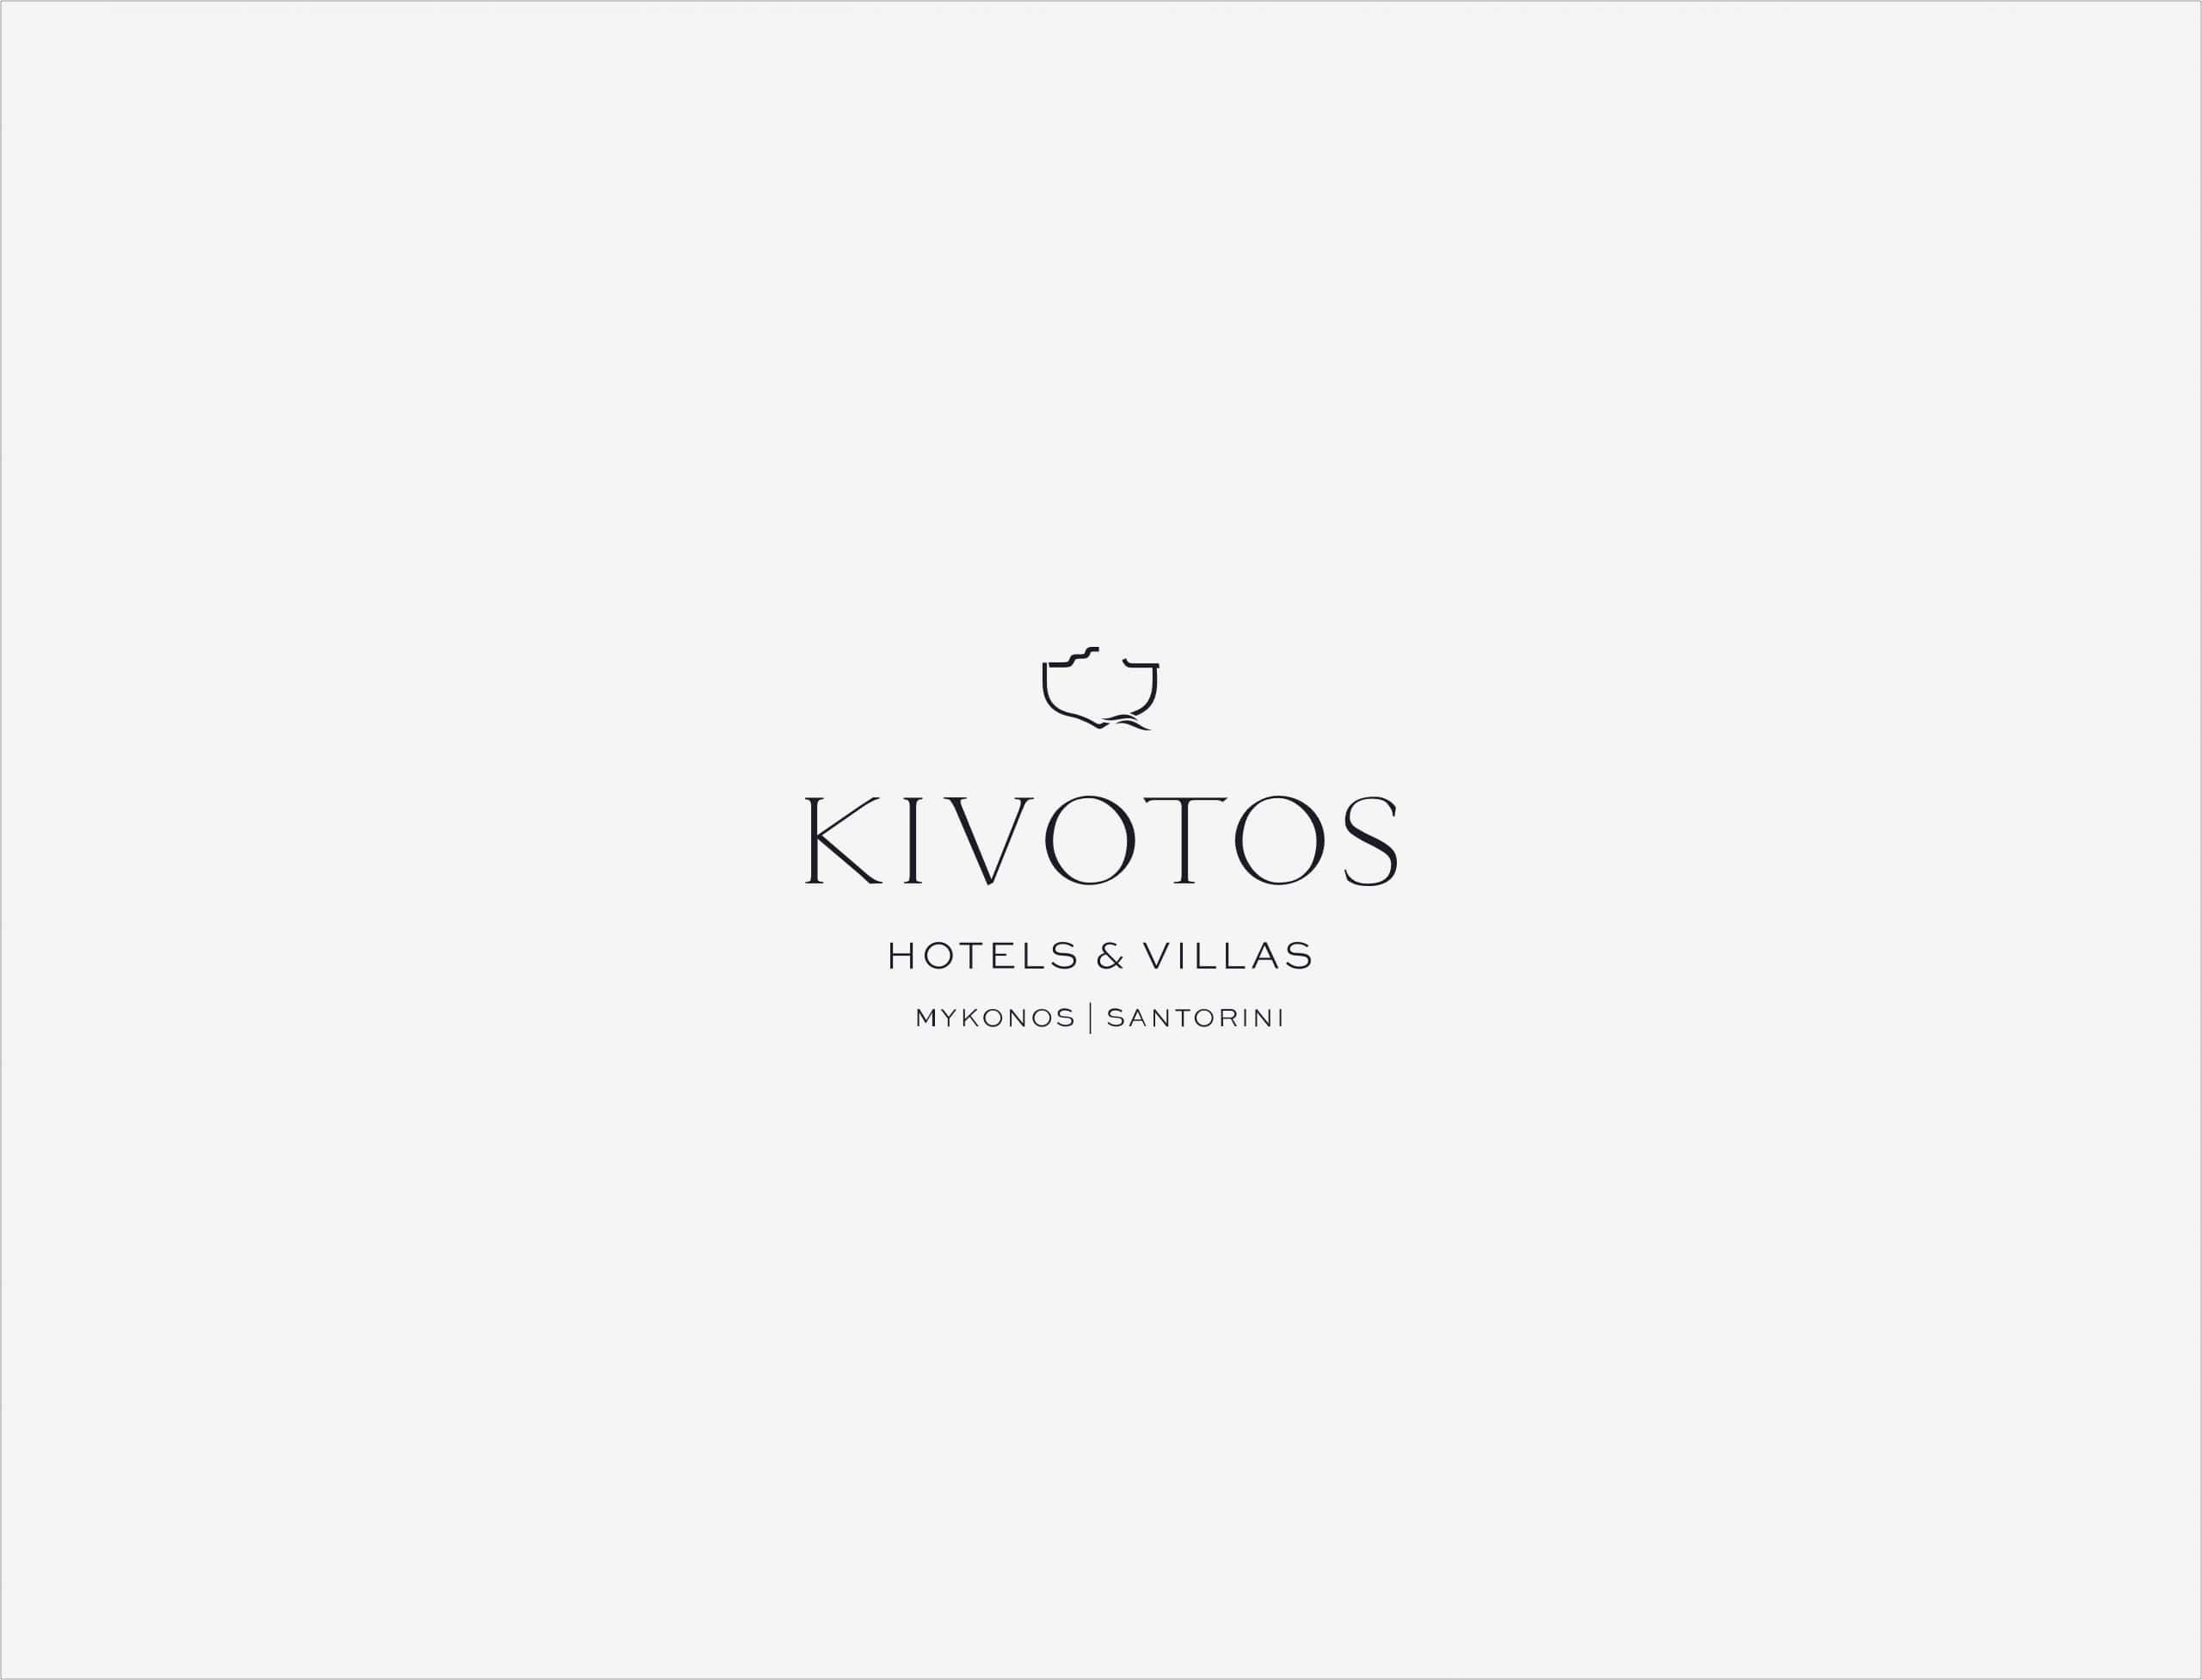 Kivotos Mykonos & Santorini